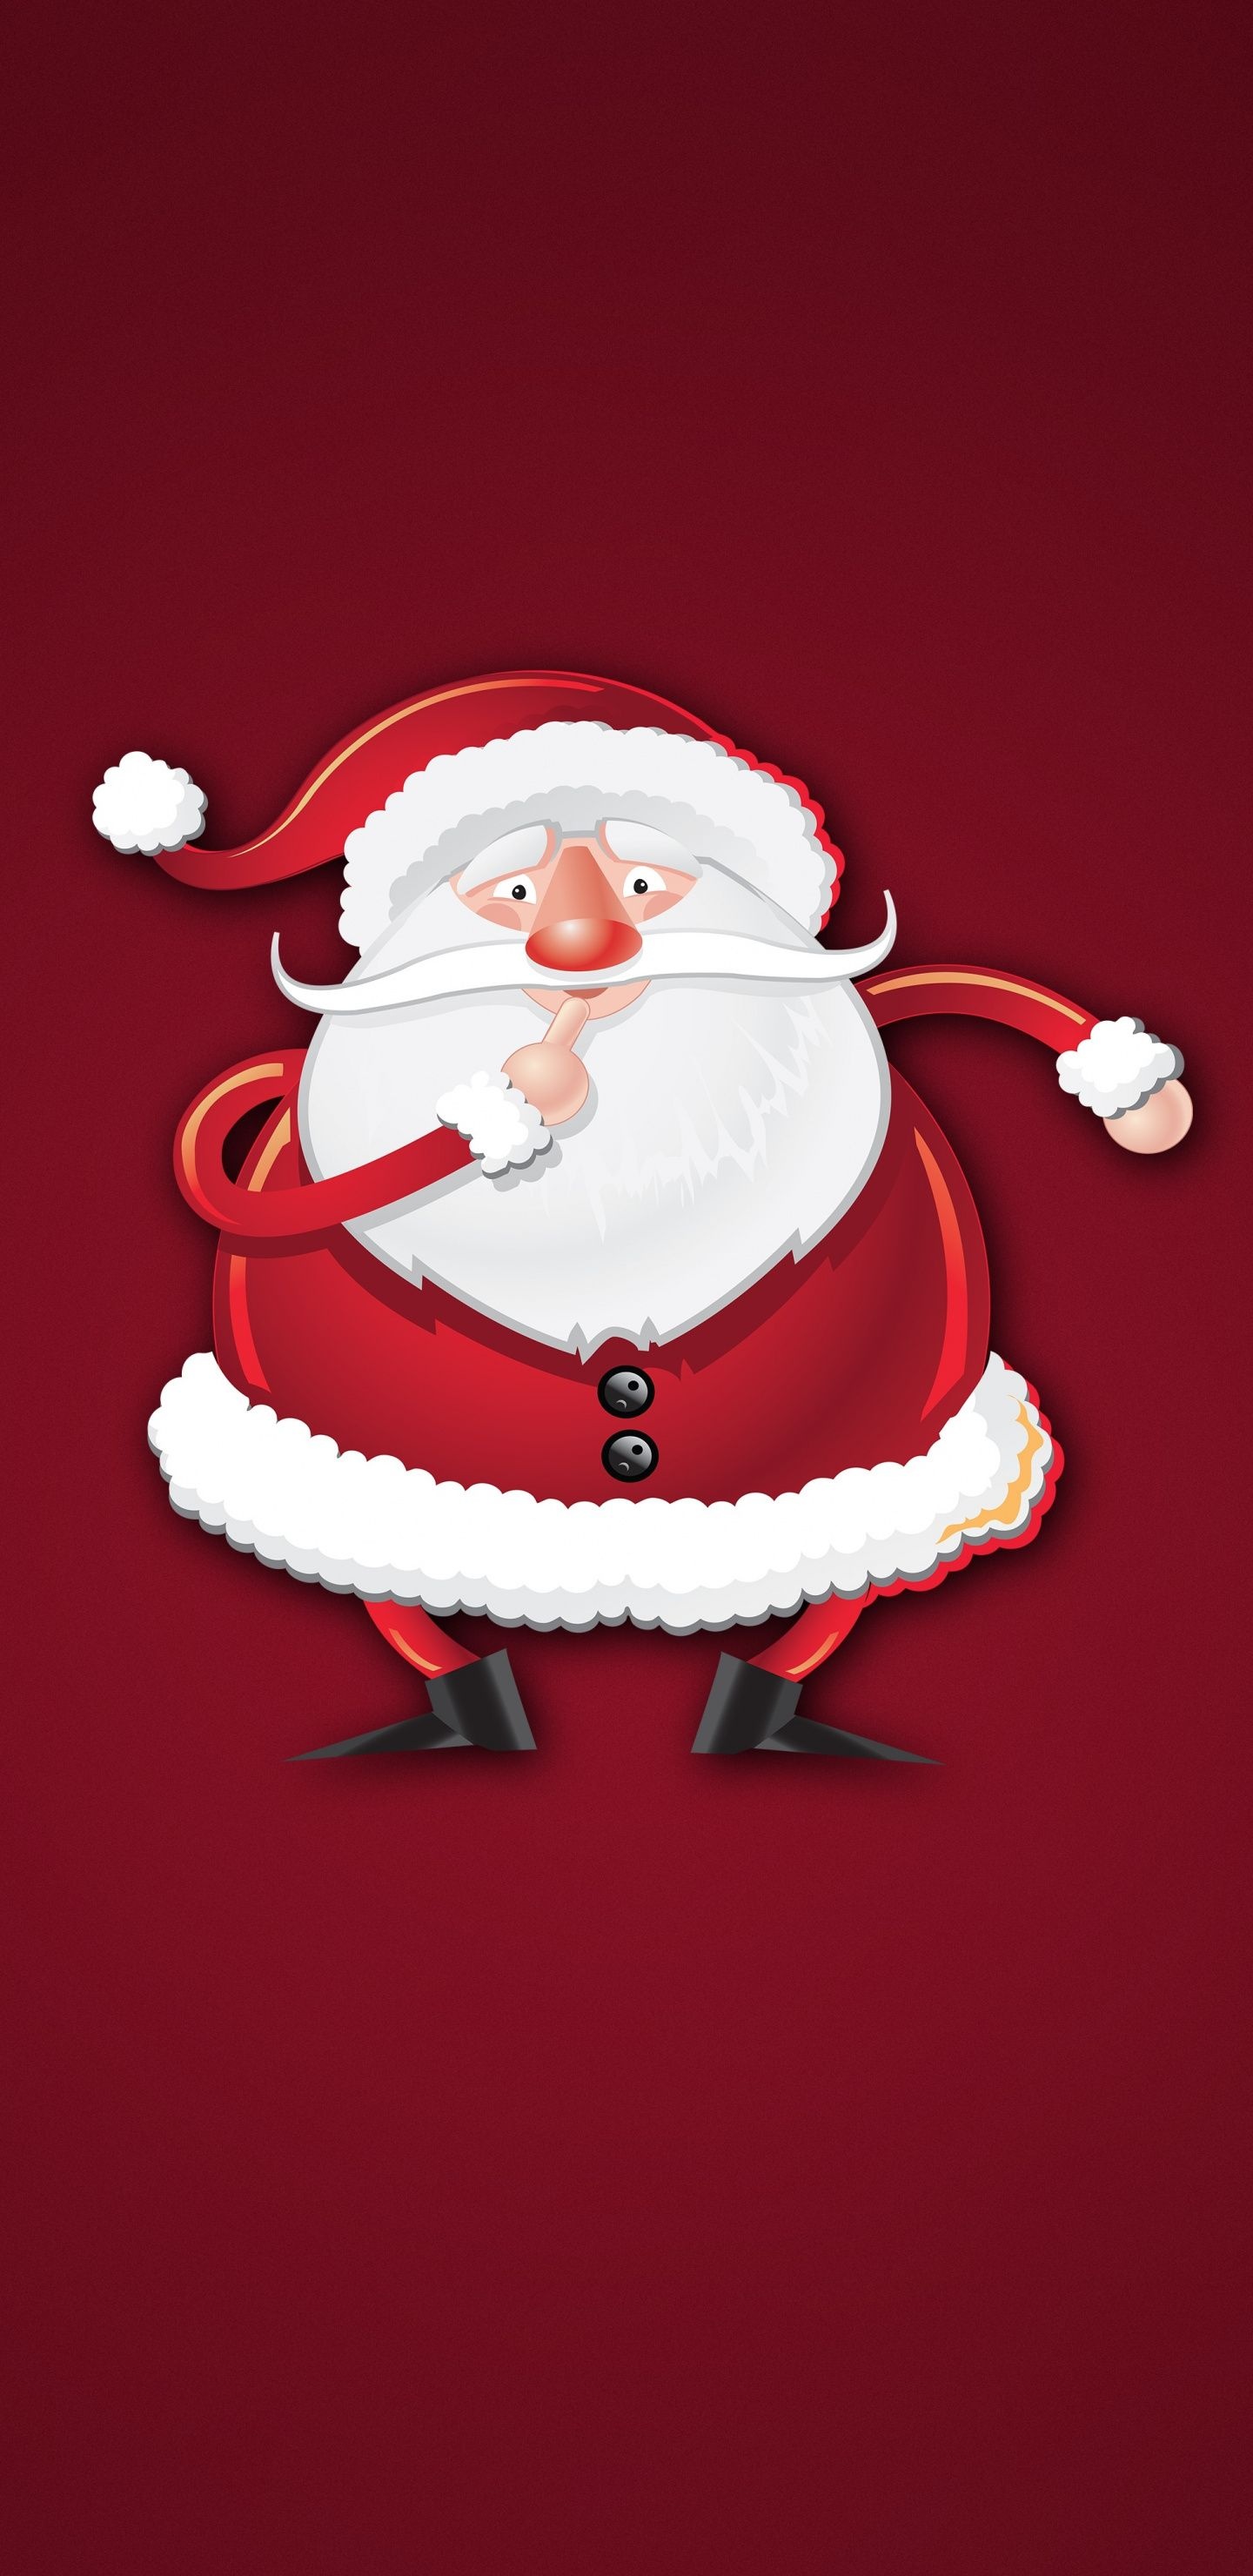 Father Christmas, Christmas wallpapers, Festive holiday cheer, Seasonal joy, 1440x2960 HD Phone